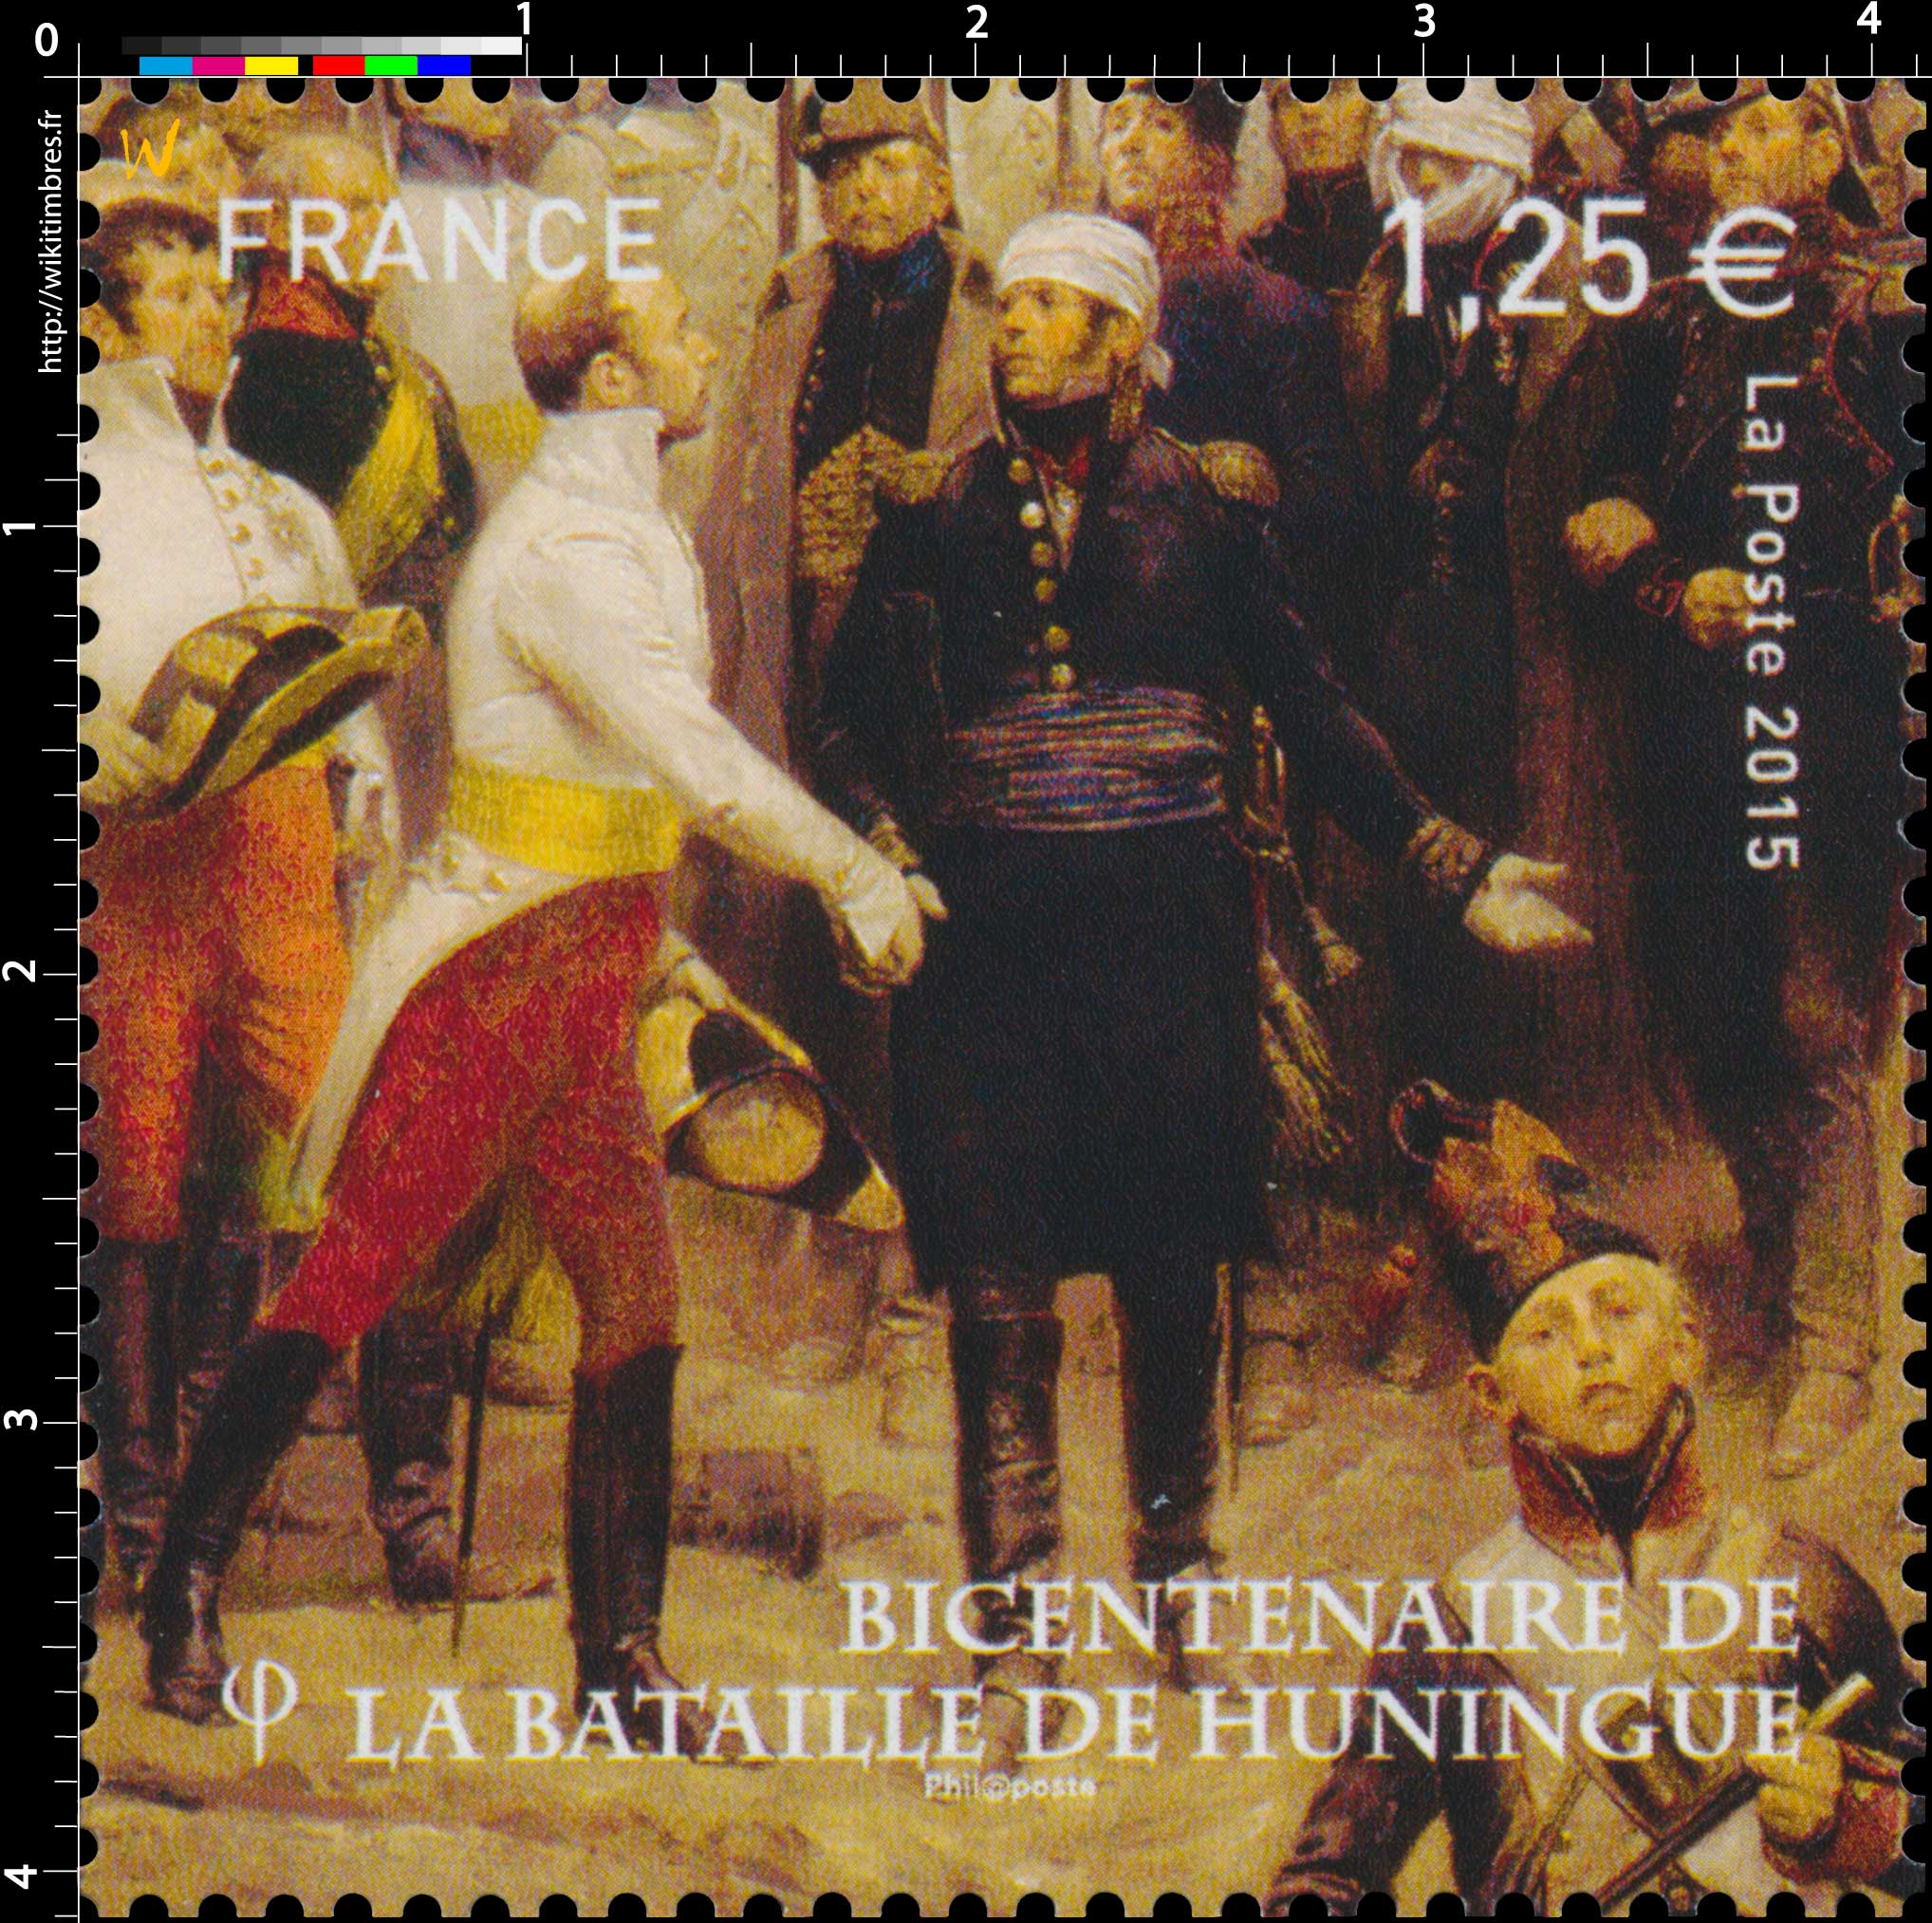 2015 Bicentenaire de la bataille de Huningue